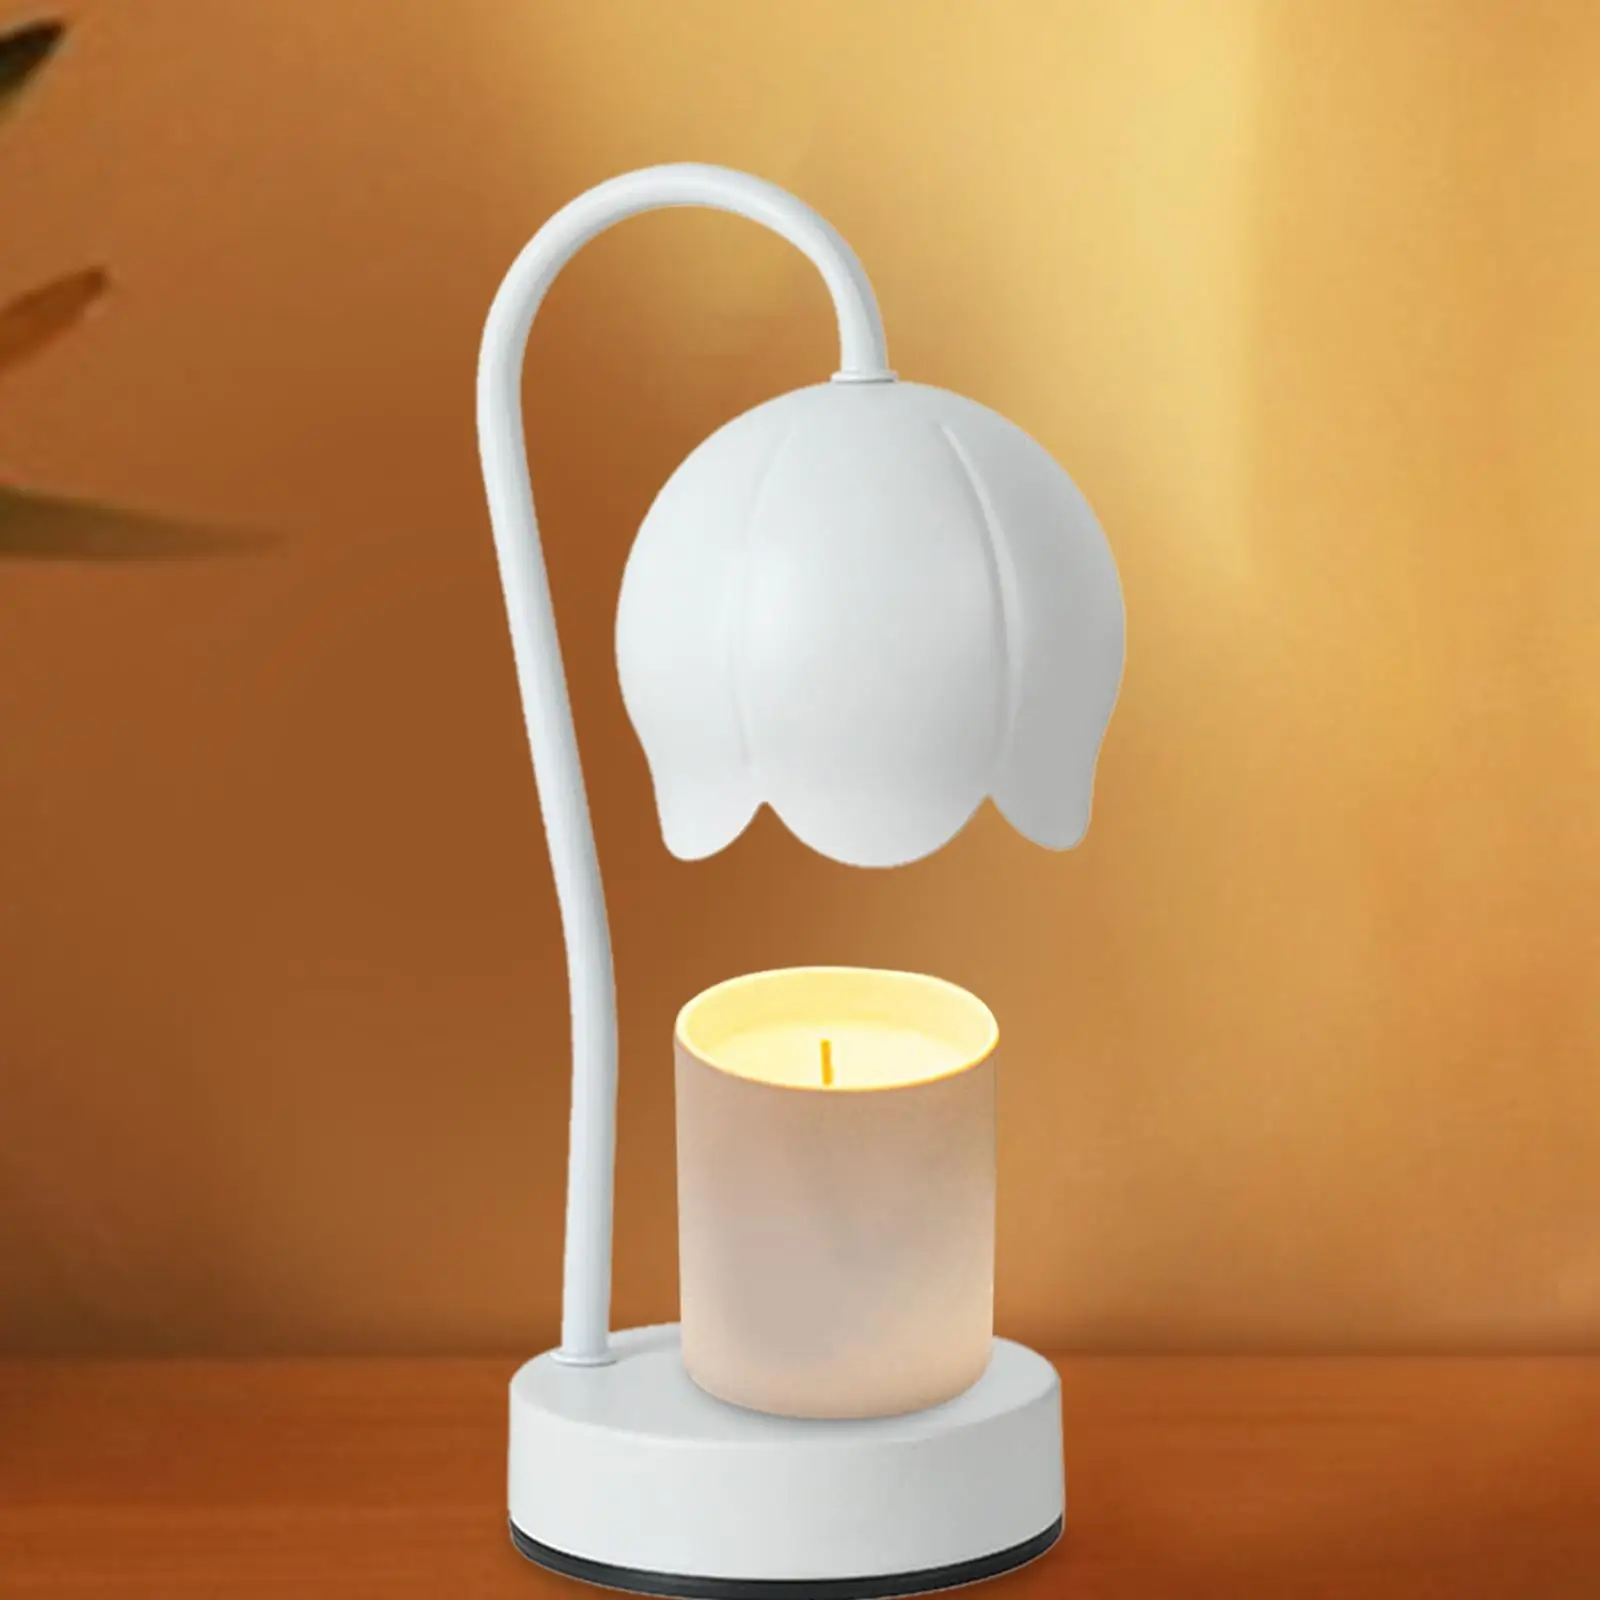 Candle Warmer Lamps Burner Melter Lamp Desk Light Lantern Candle Melting Light for Tabletop Yoga Office Home Decoration Gift